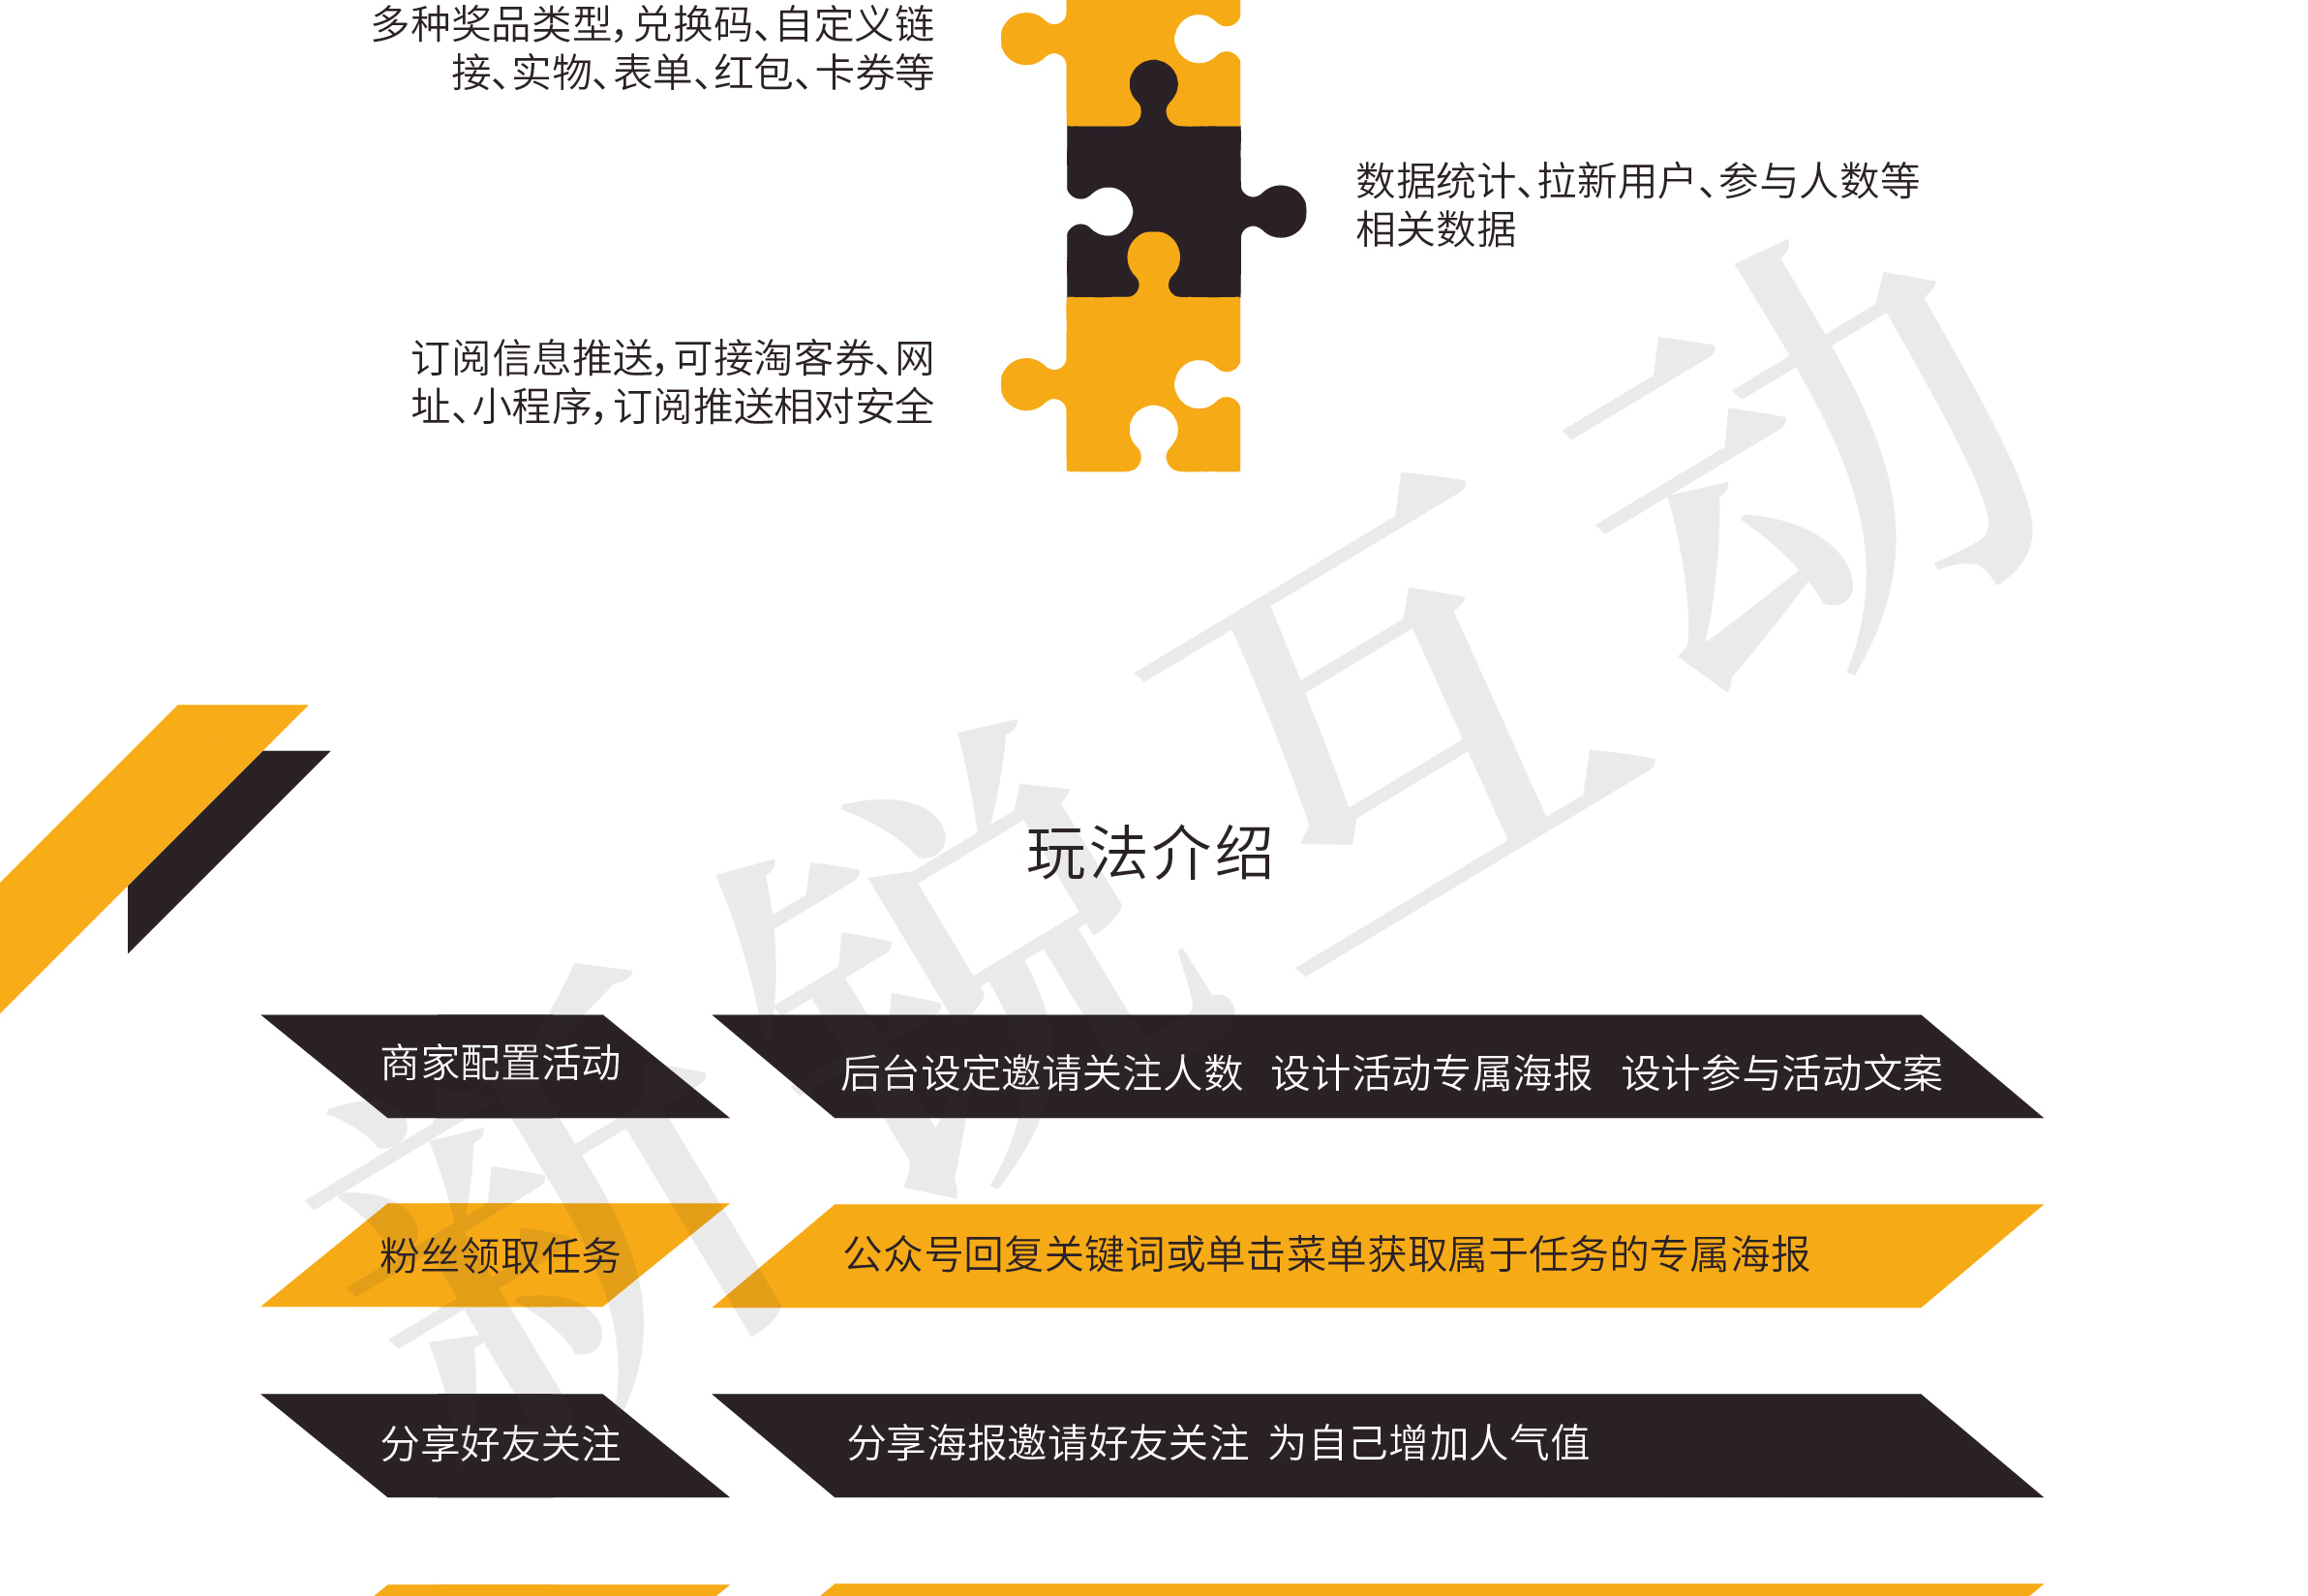 增强版任务宝功能介绍_画板-1_03.gif